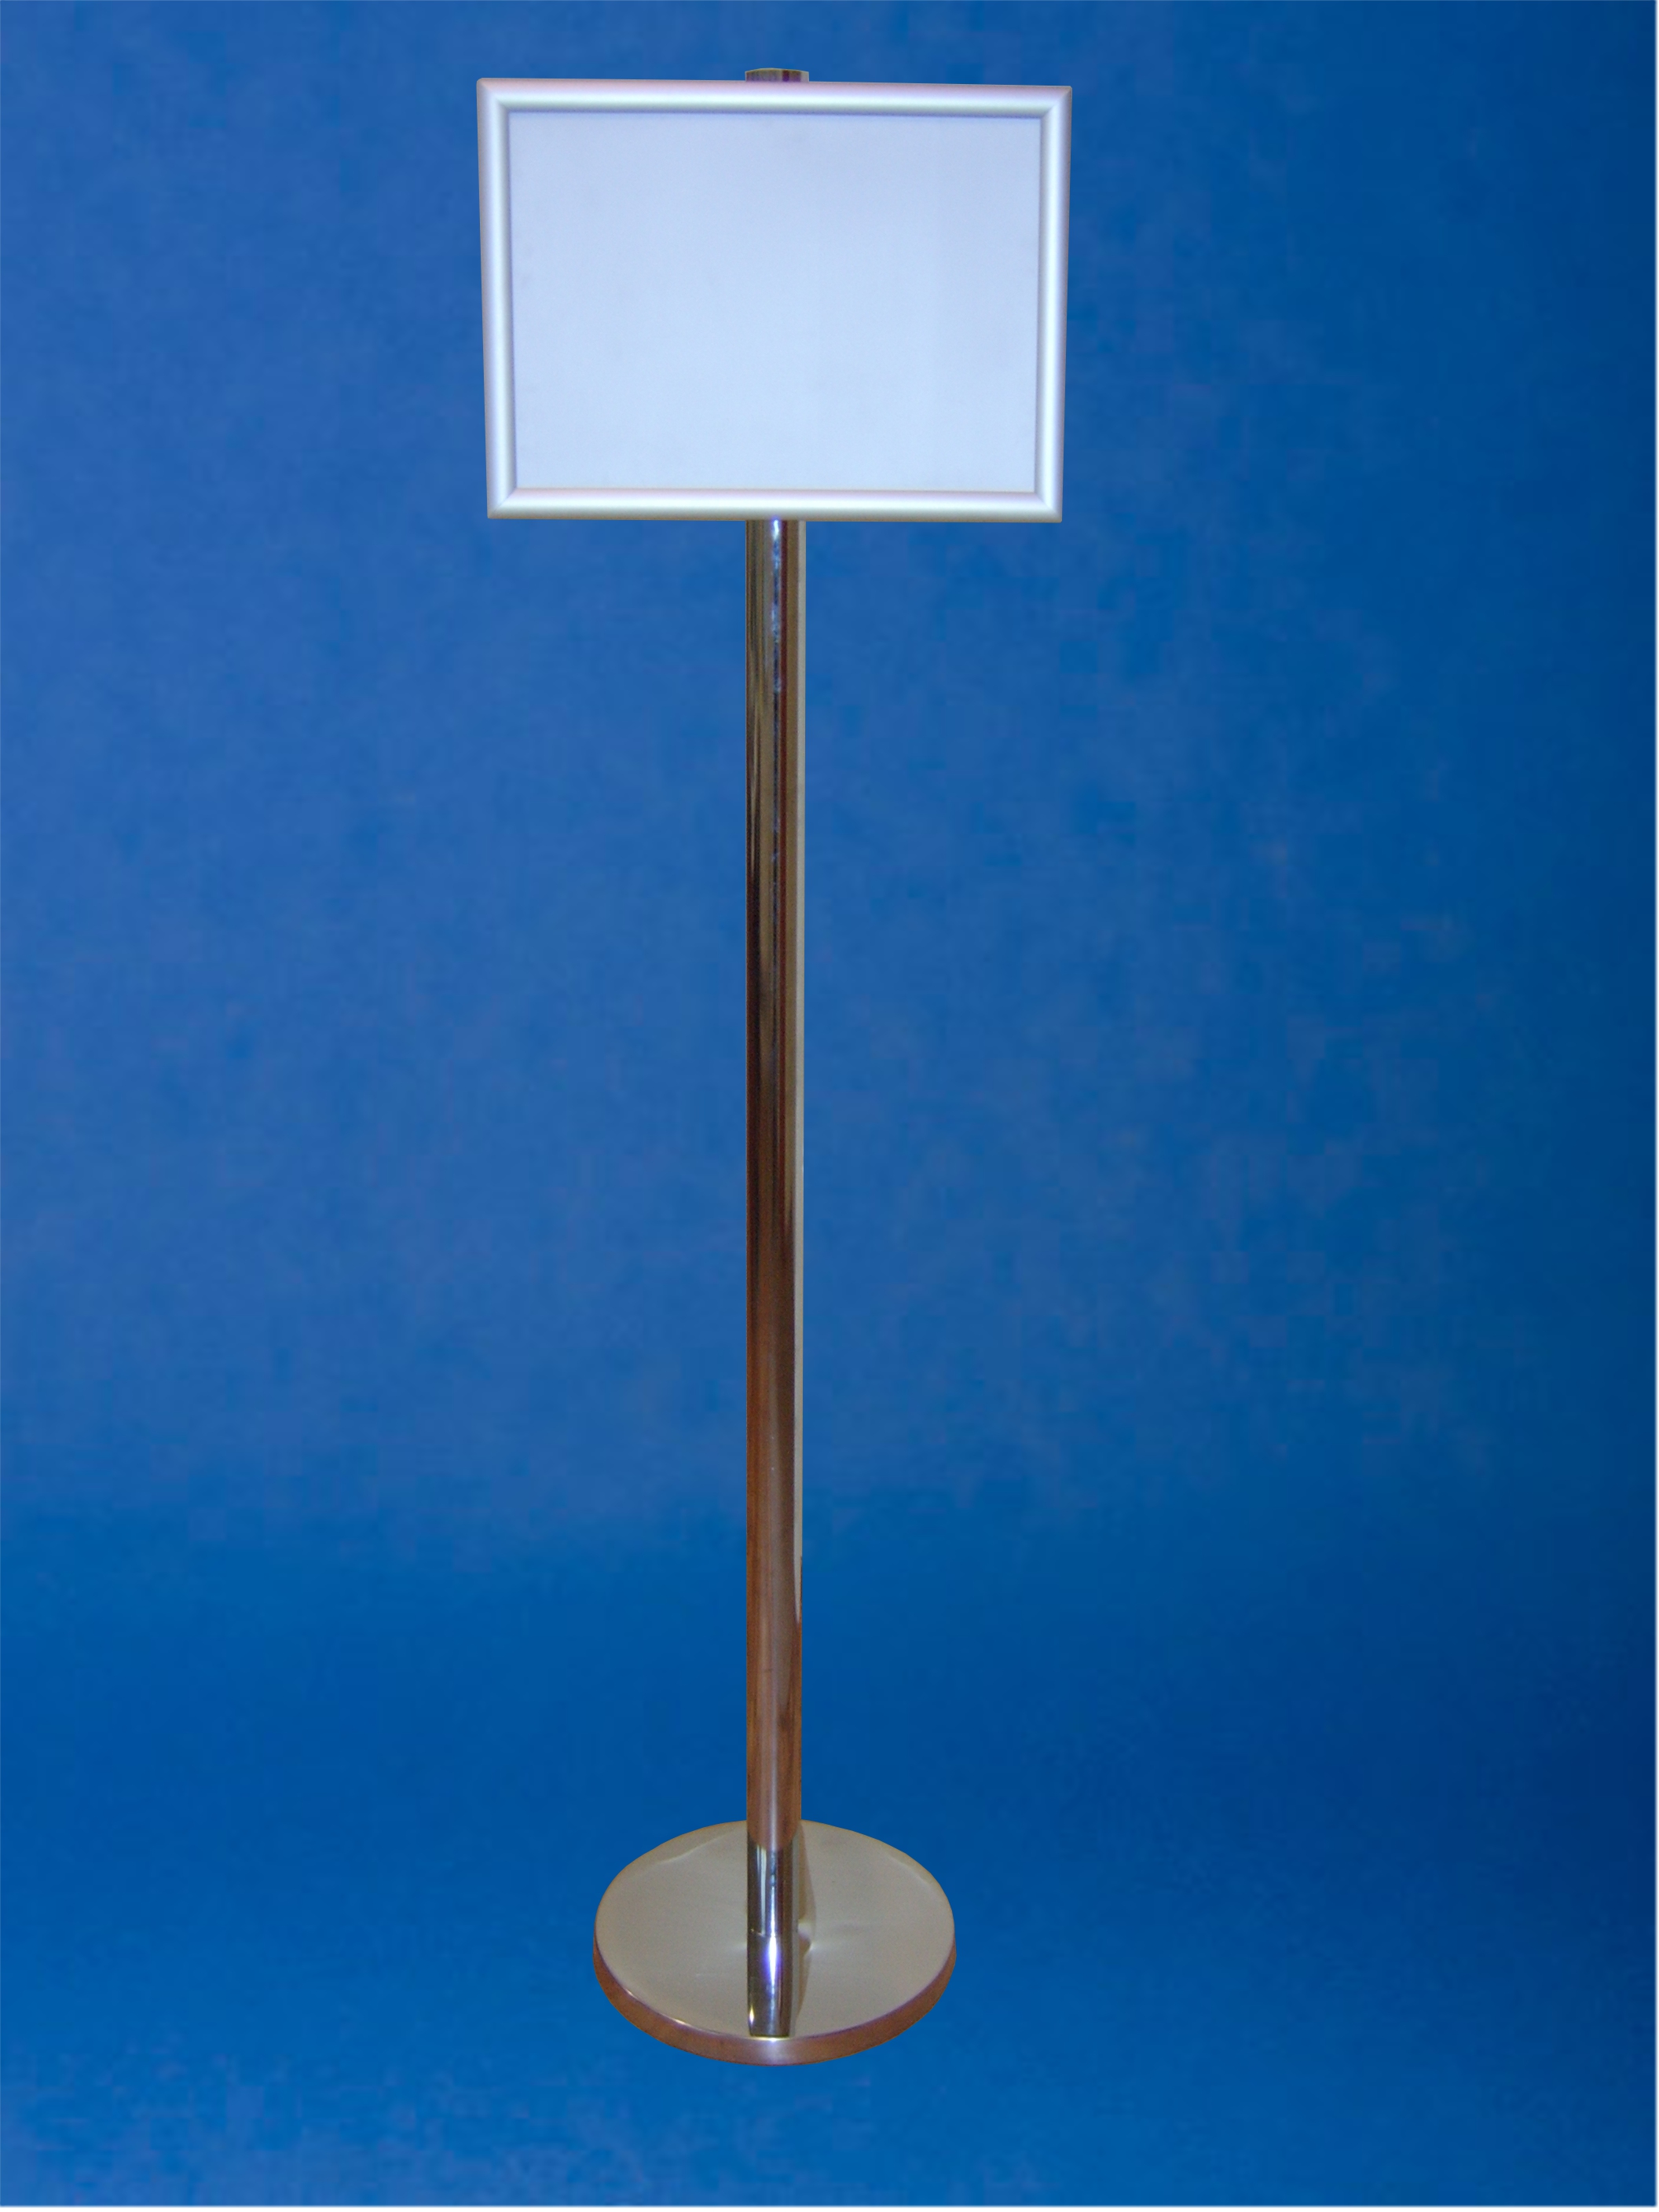 EXPOINT Informační stojan s kliprámem A3 a výškou 120 cm Název: Kliprám ostré rohy umístěný svisle